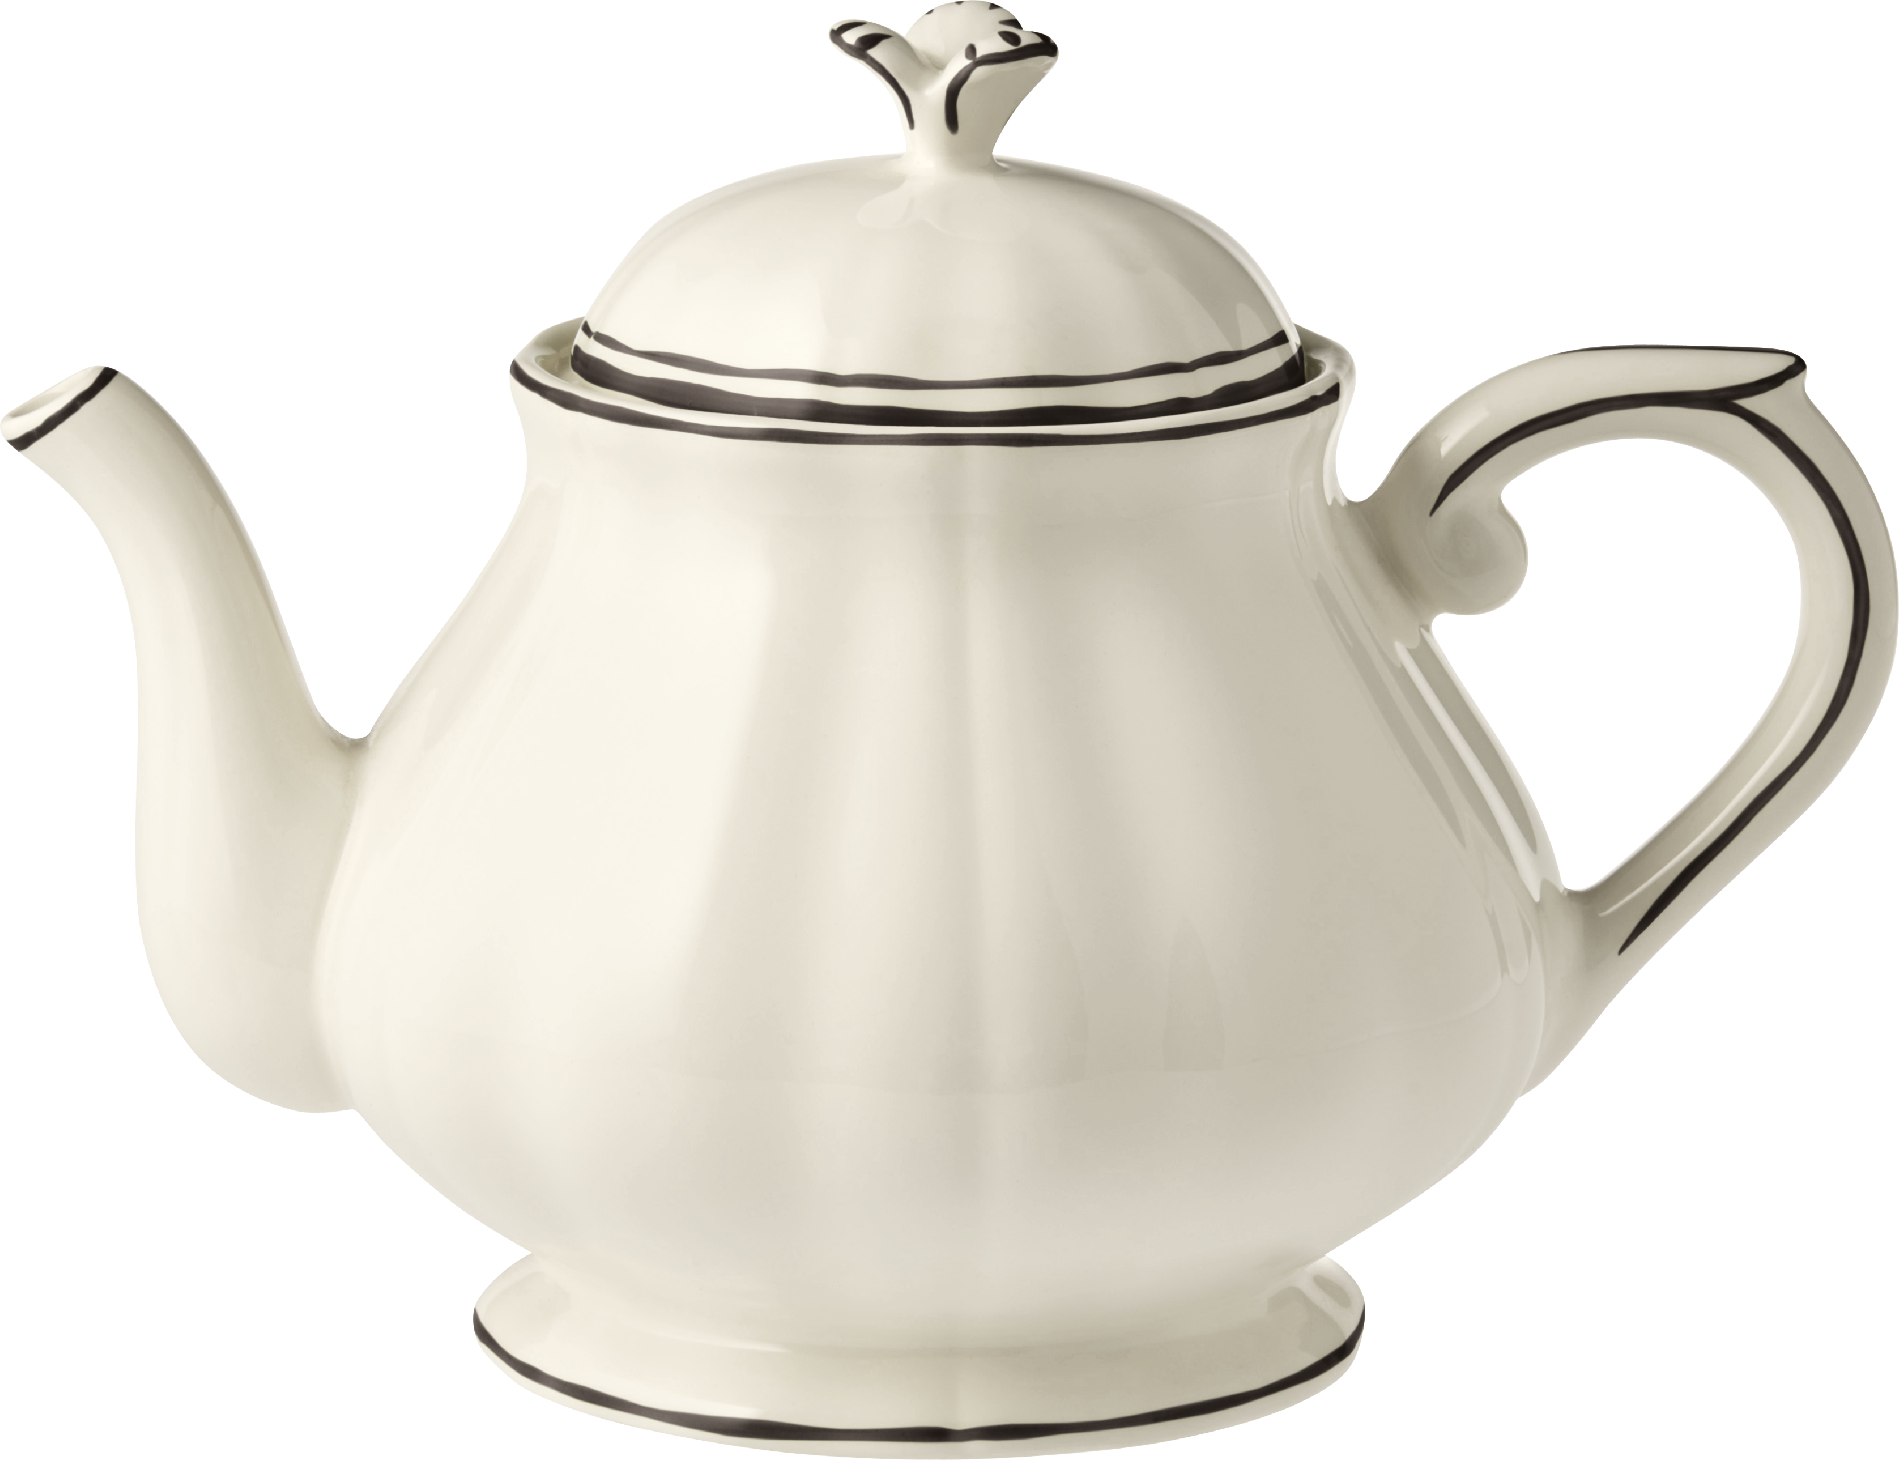 Tea Pot, Filet Manganese